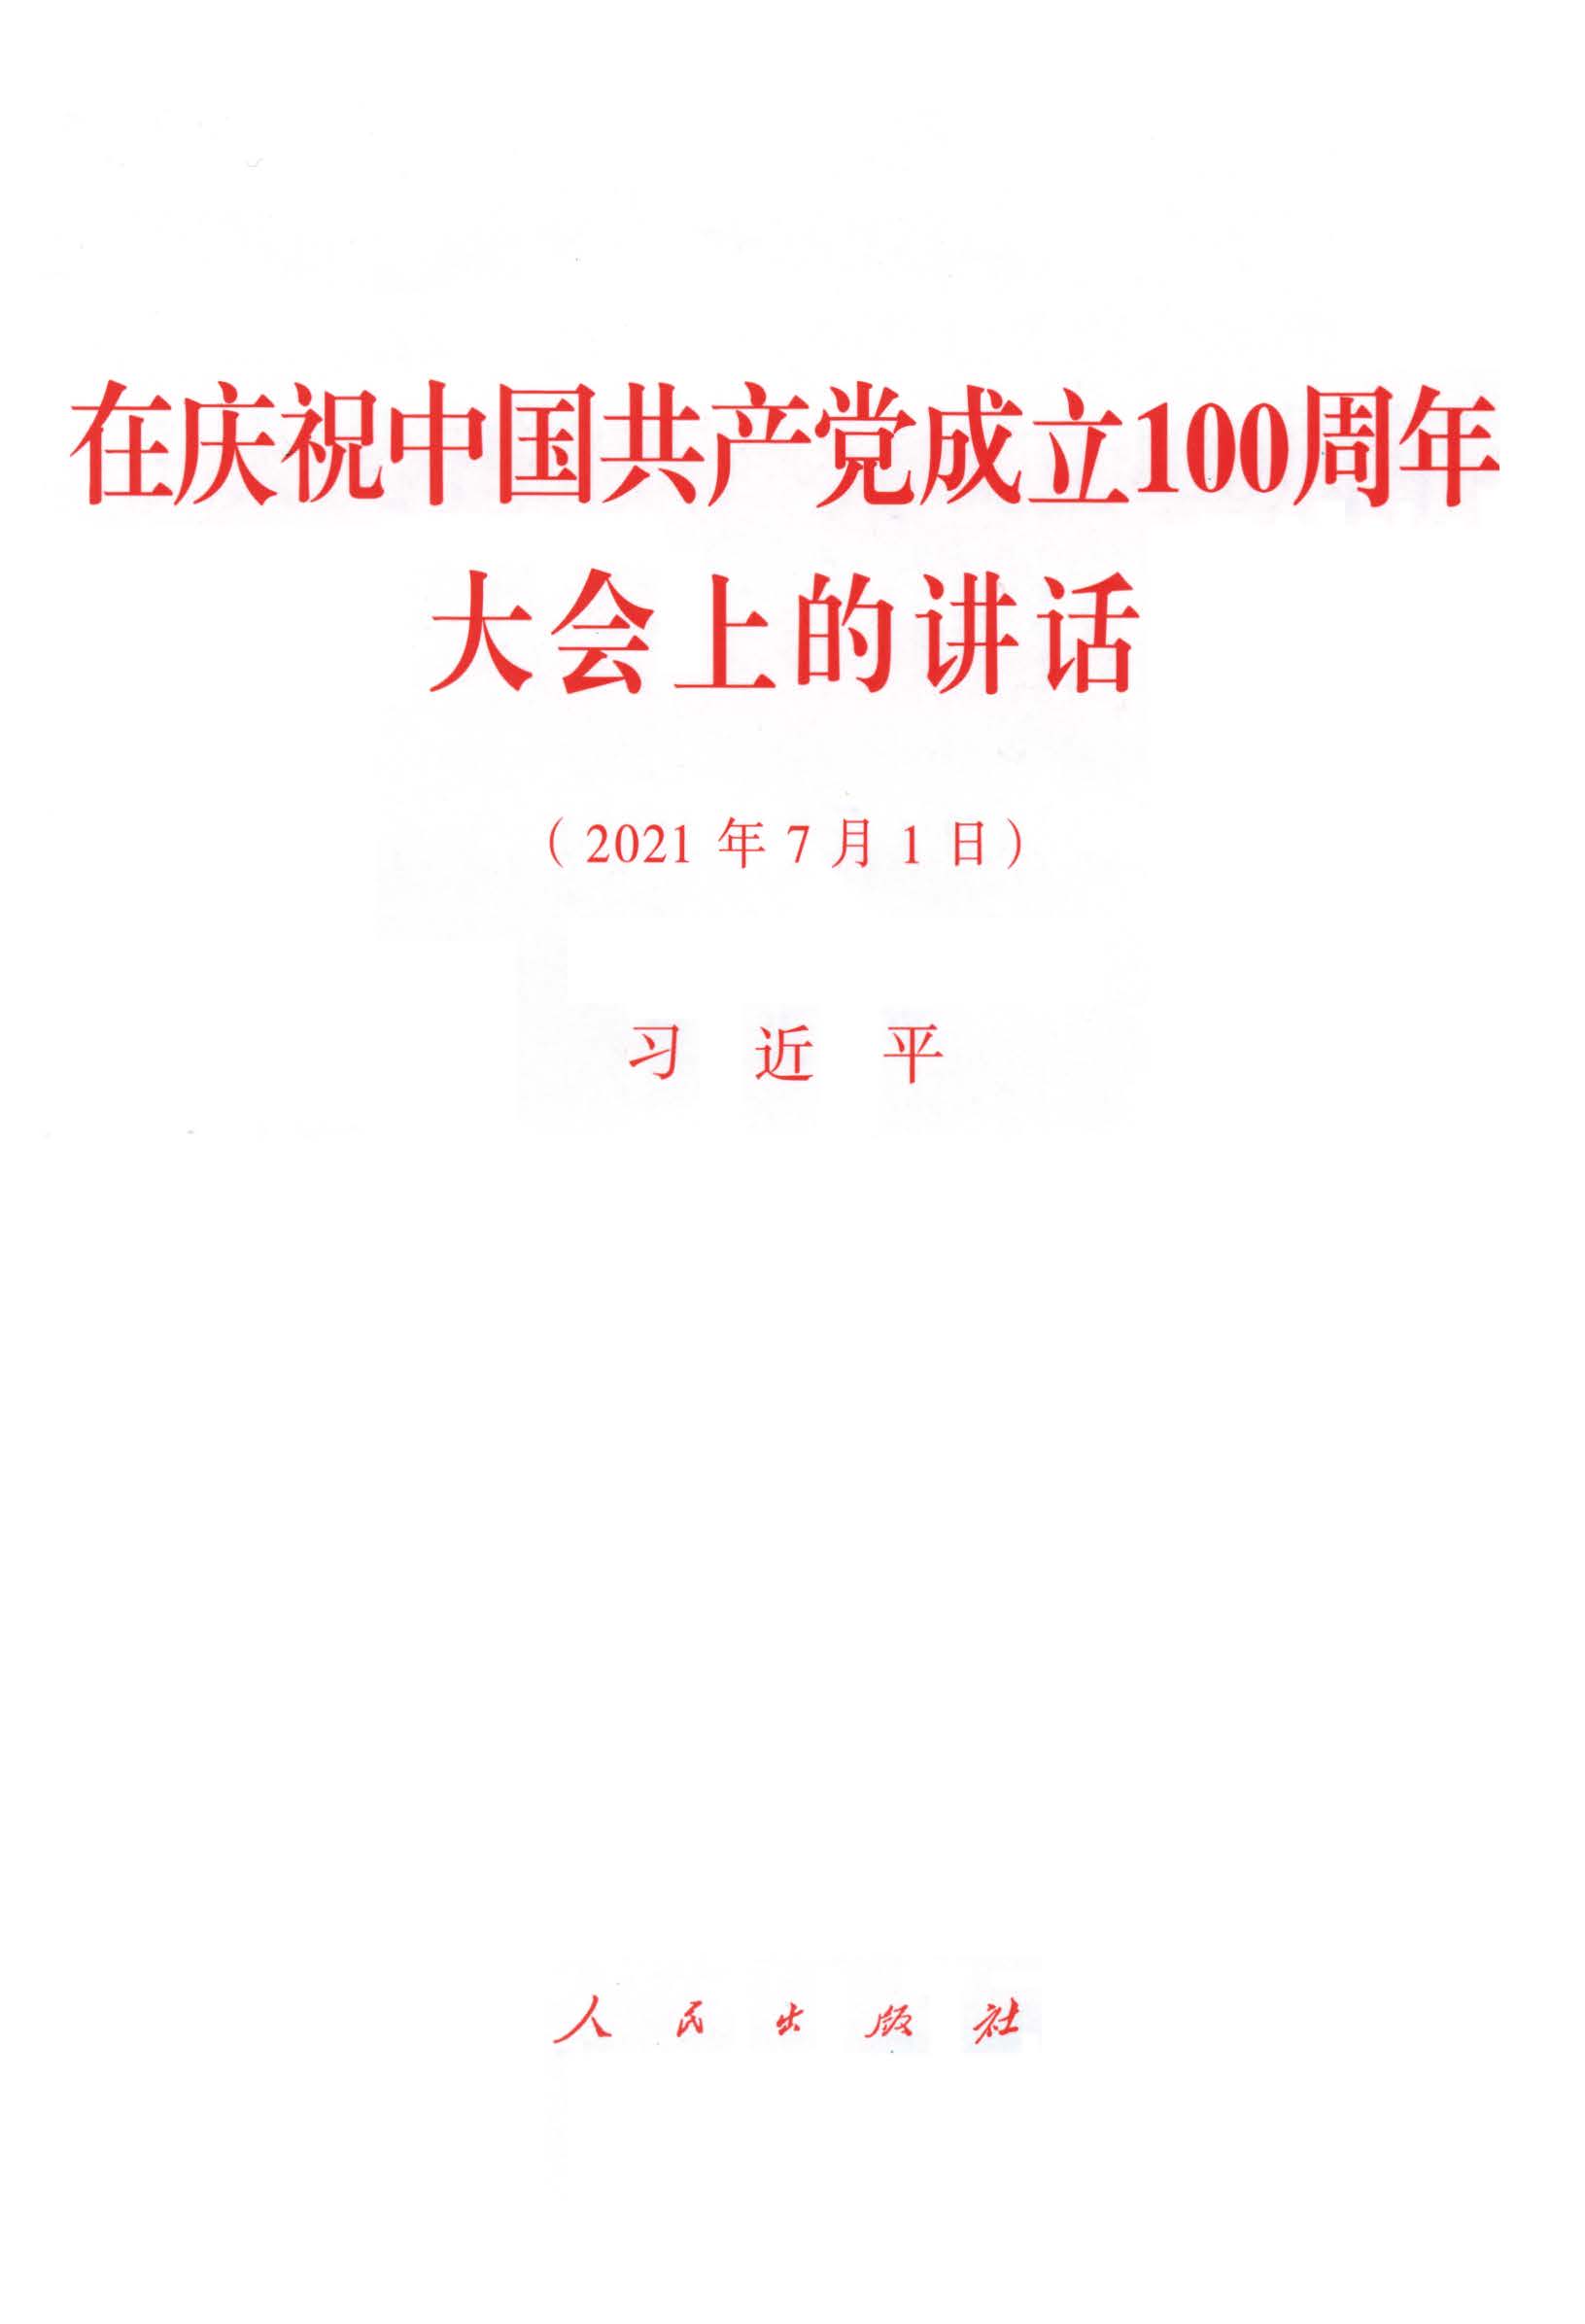 在庆祝中国共产党成立100周年大会上的讲话（2021年7月1日）